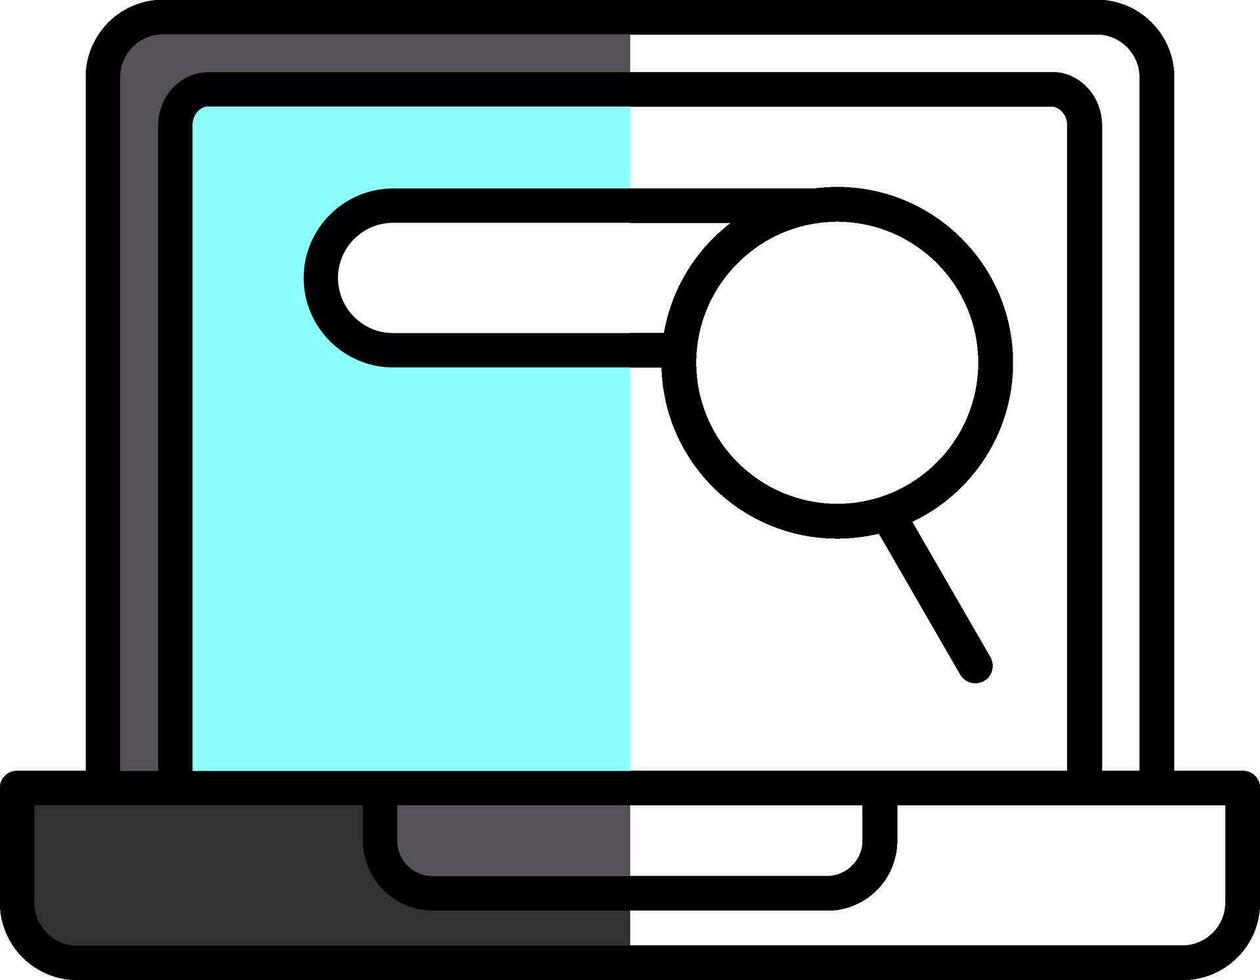 Search Vector Icon Design